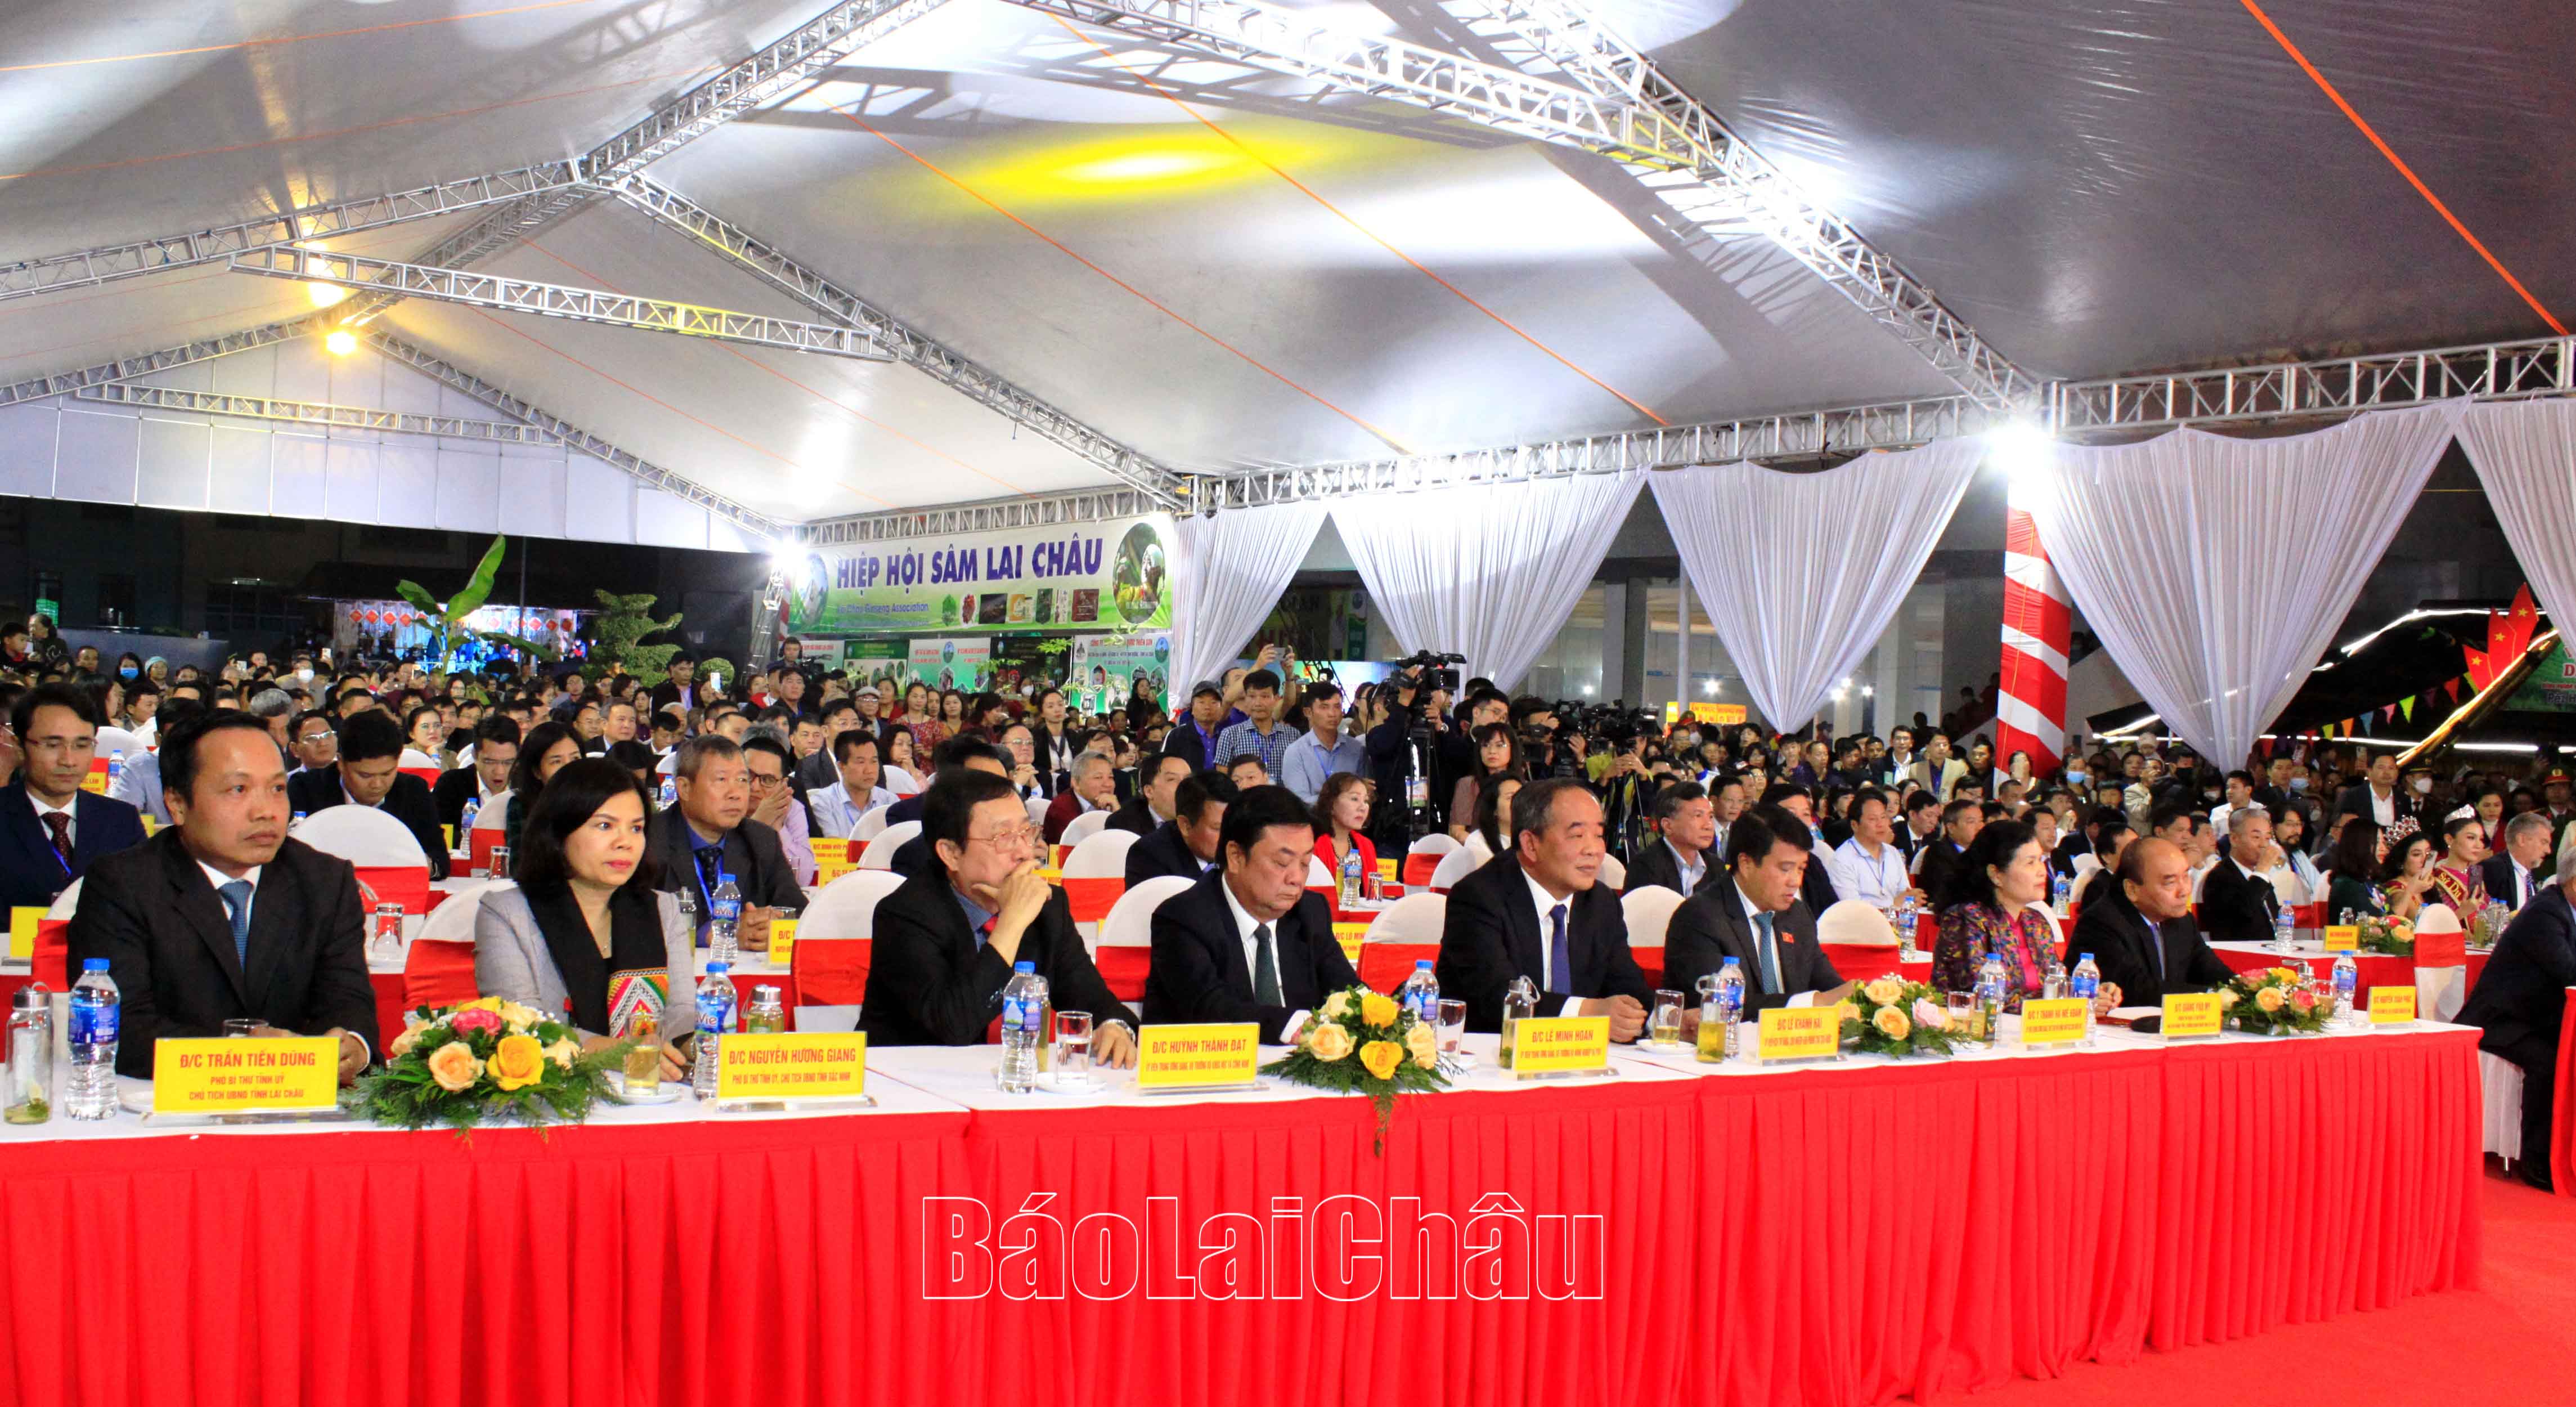 Các đại biểu khách quý dự Lễ khai mạc Hội chợ Sâm Lai Châu năm 2022.